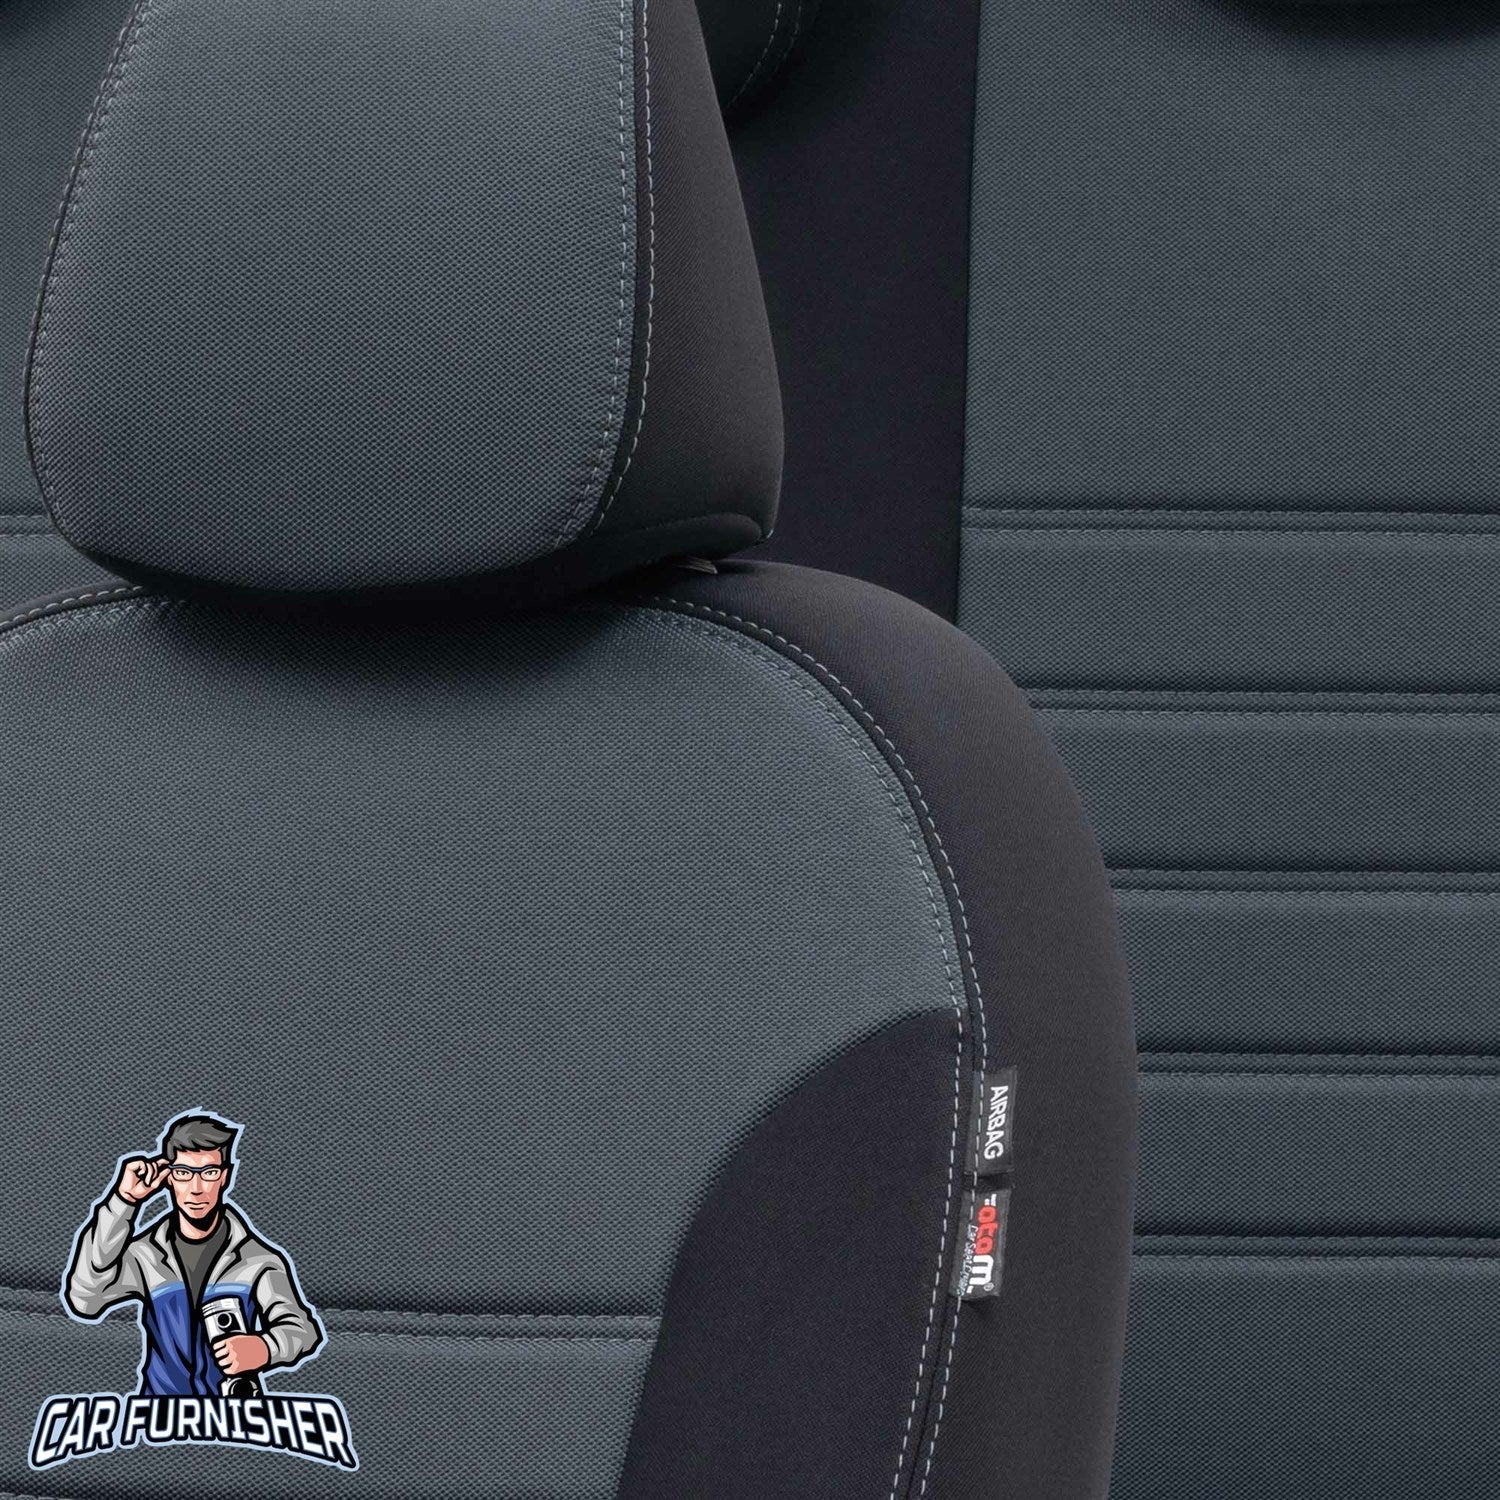 Hyundai H1 Seat Covers Original Jacquard Design Smoked Black Jacquard Fabric